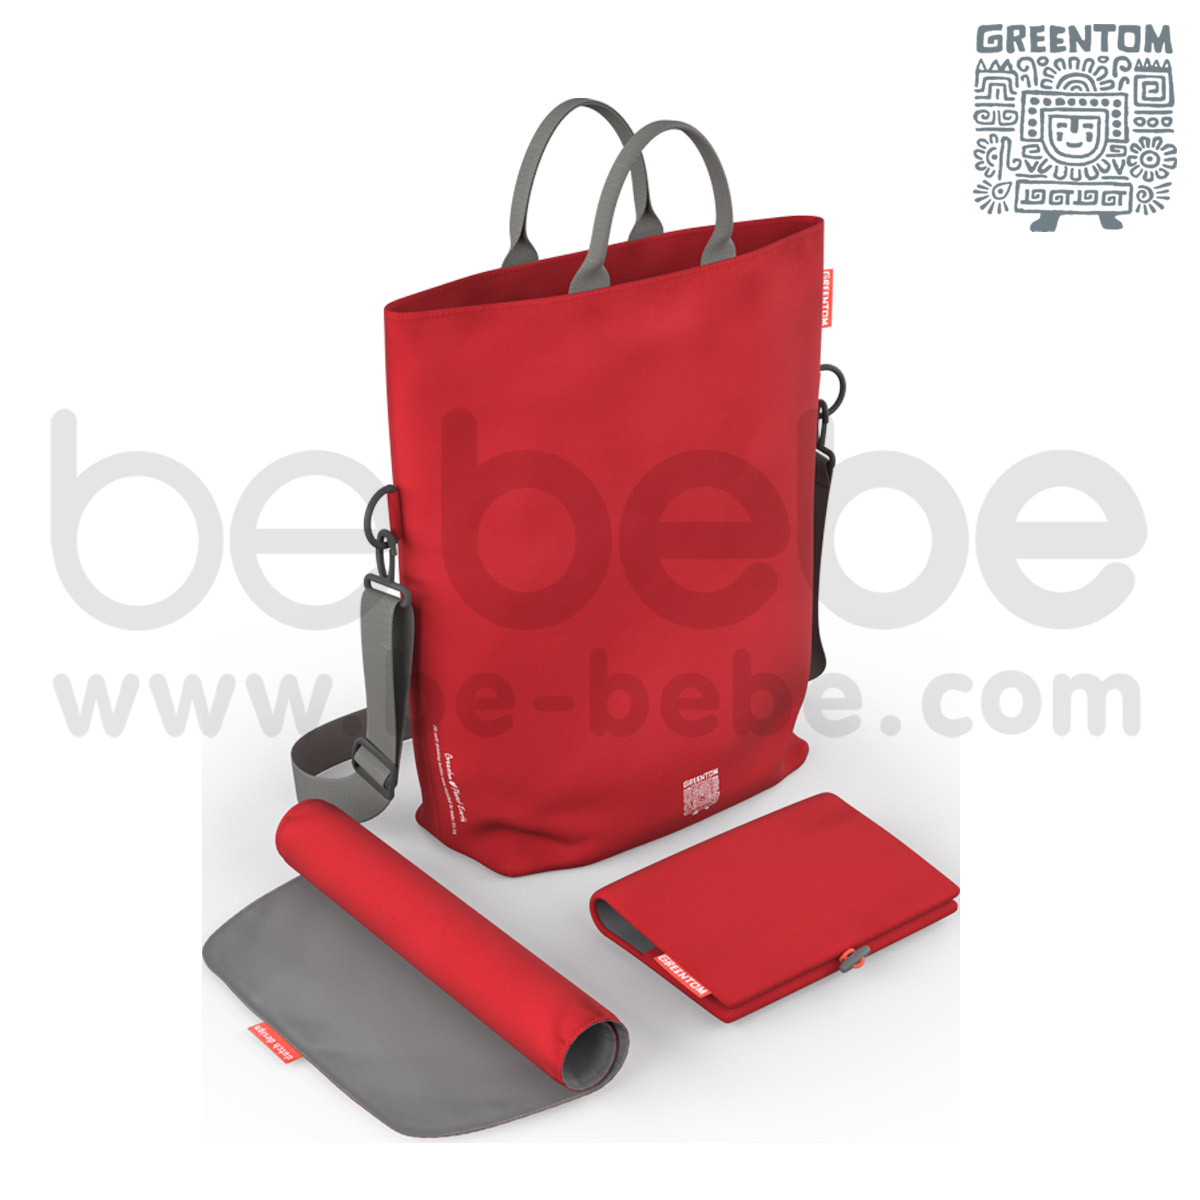 Greentom : Diaper Bag / Red